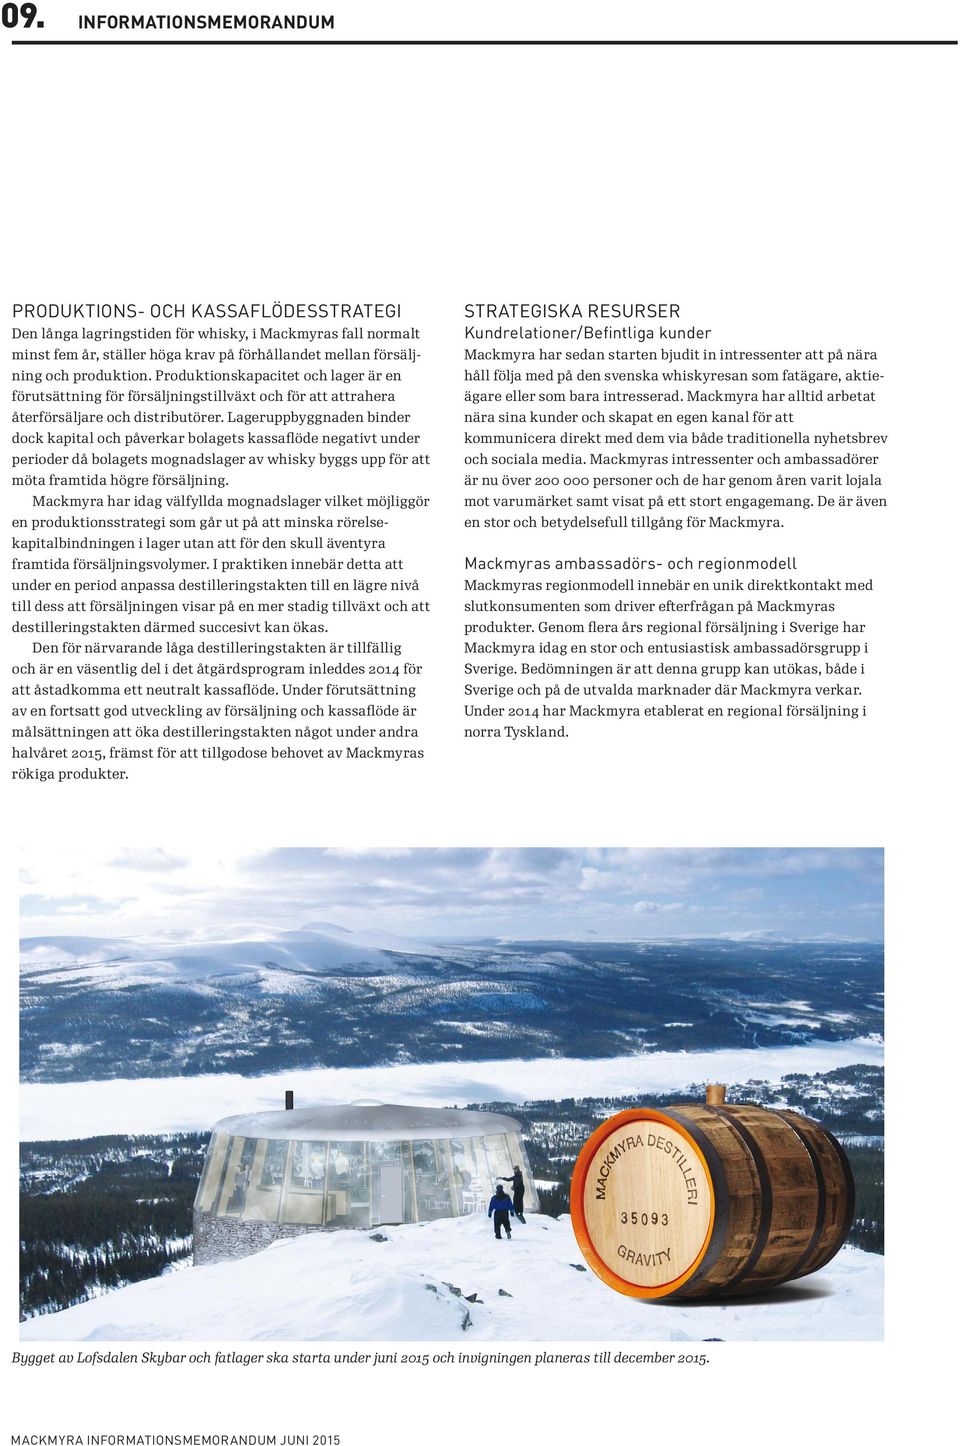 Produktionskapacitet och lager är en håll följa med på den svenska whiskyresan som fatägare, aktie- förutsättning för försäljningstillväxt och för att attrahera ägare eller som bara intresserad.